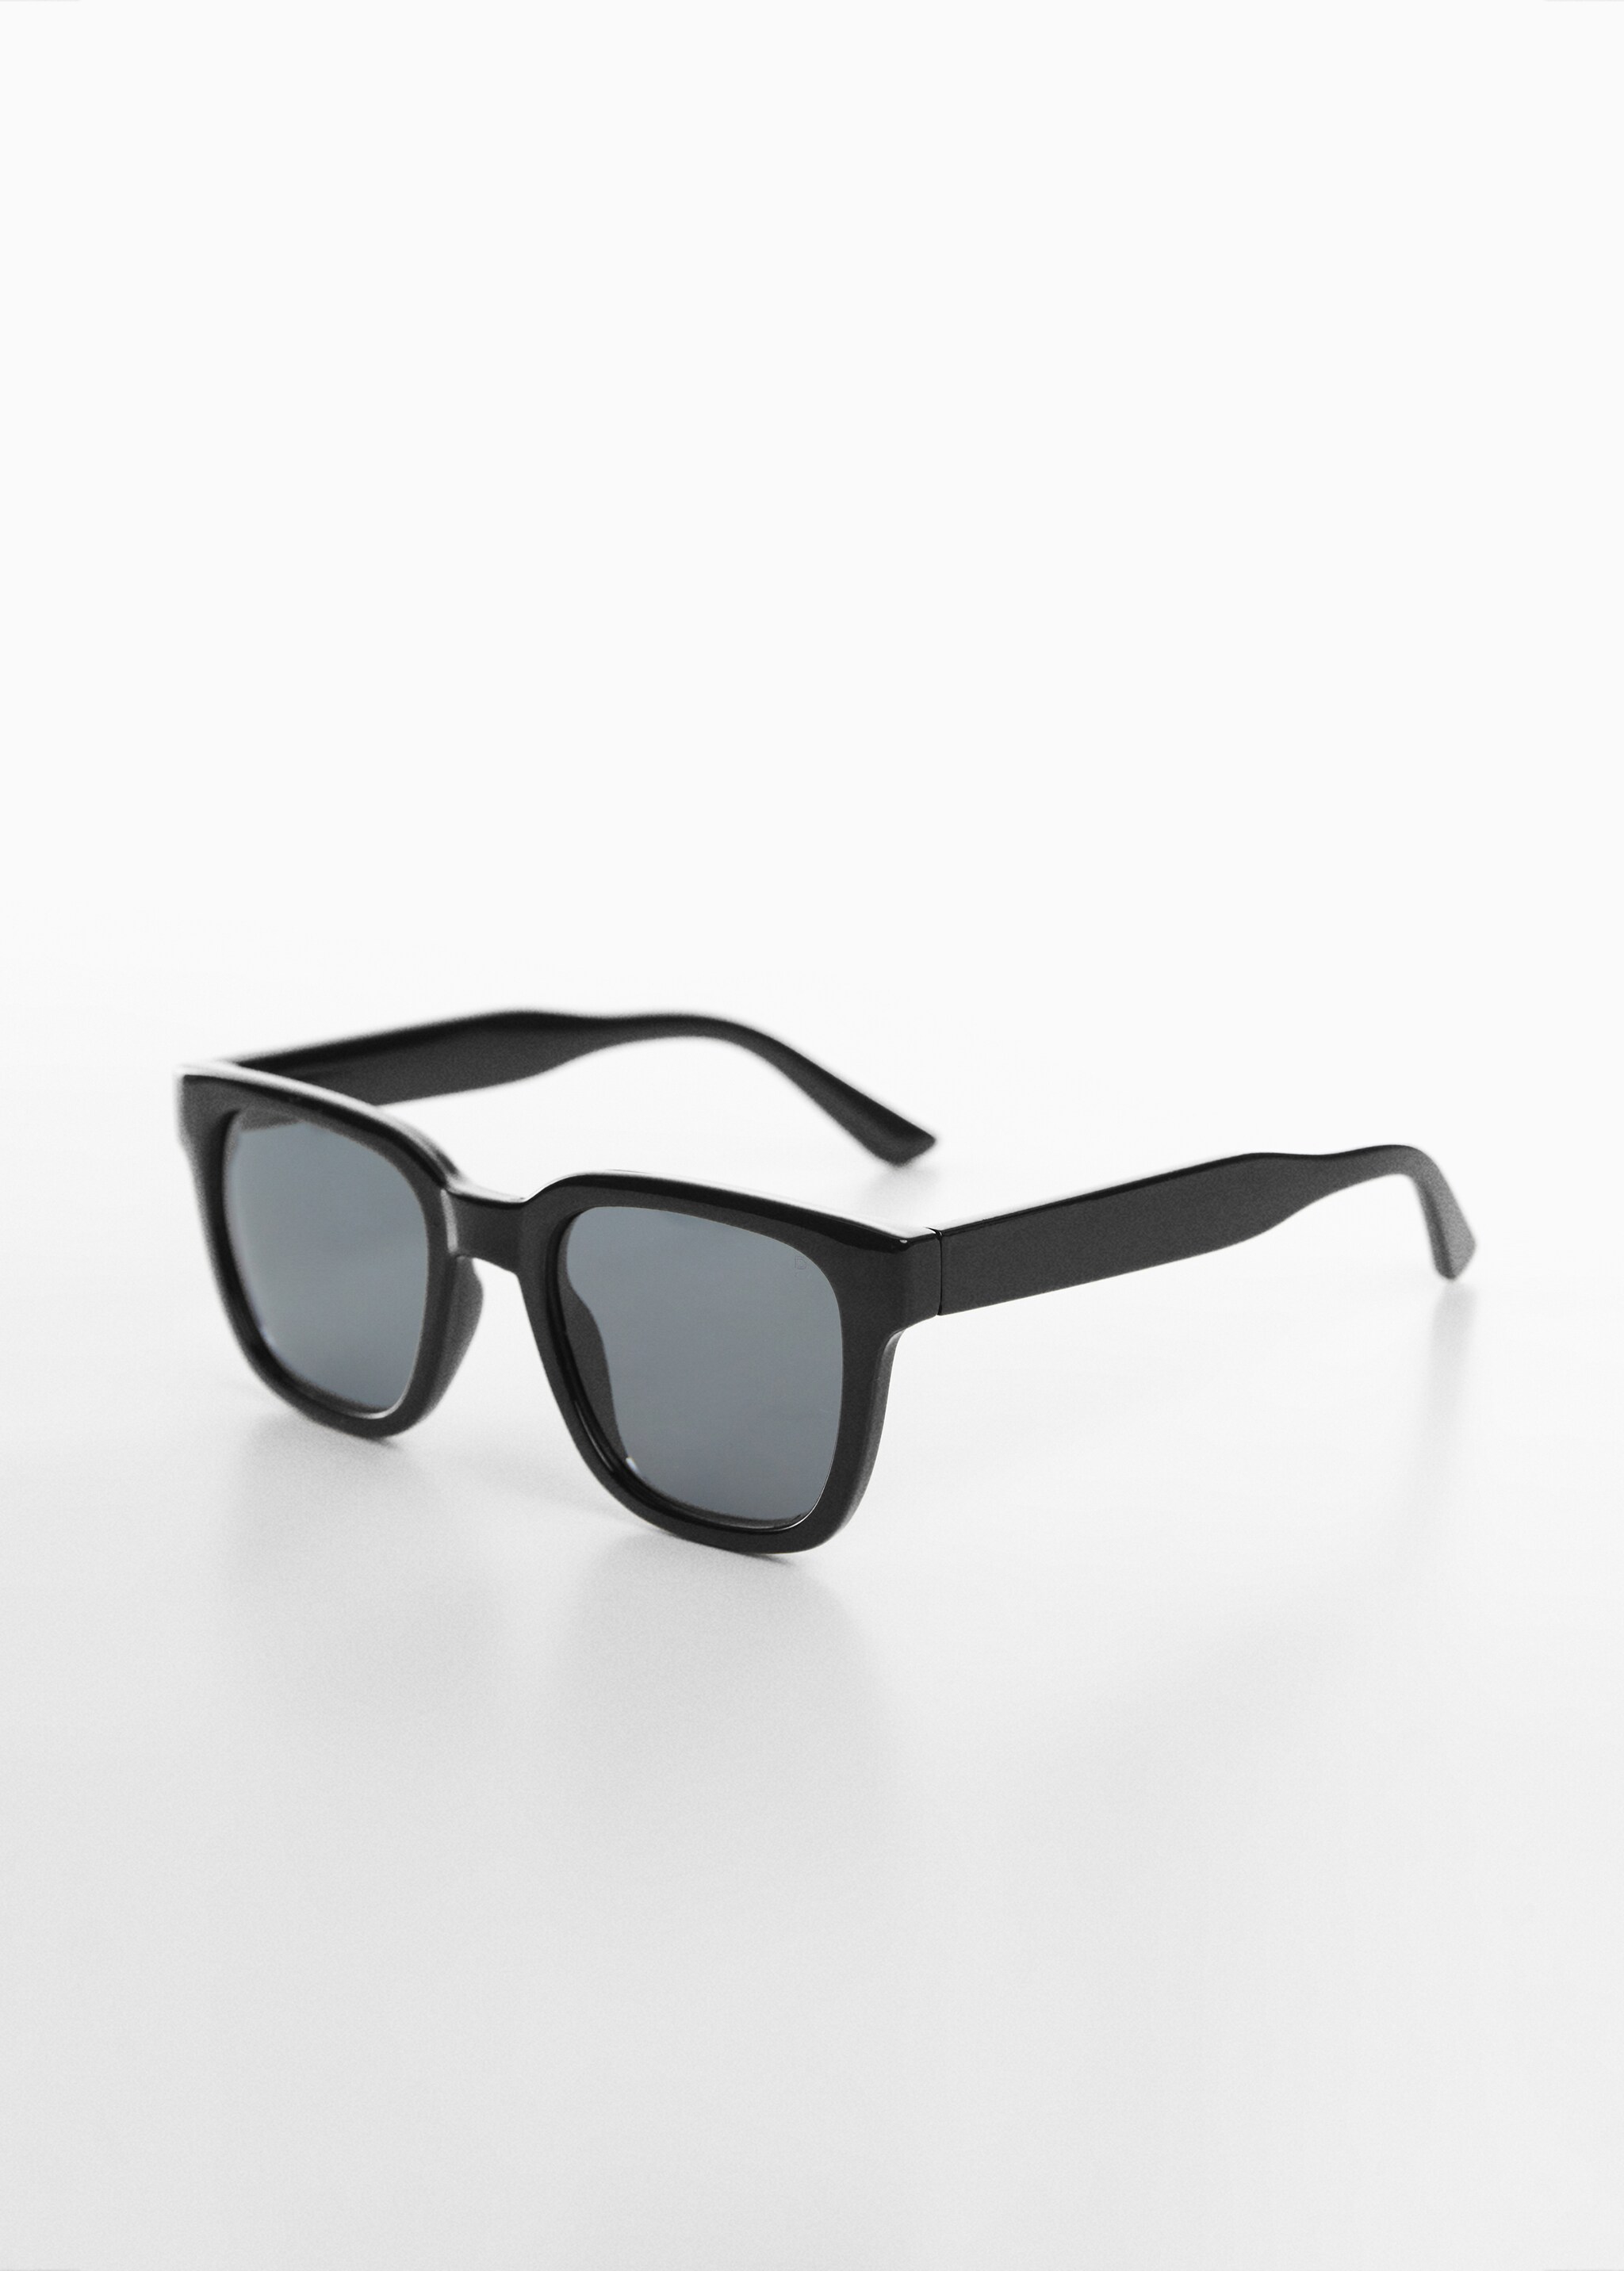 Polarised sunglasses - Medium plane